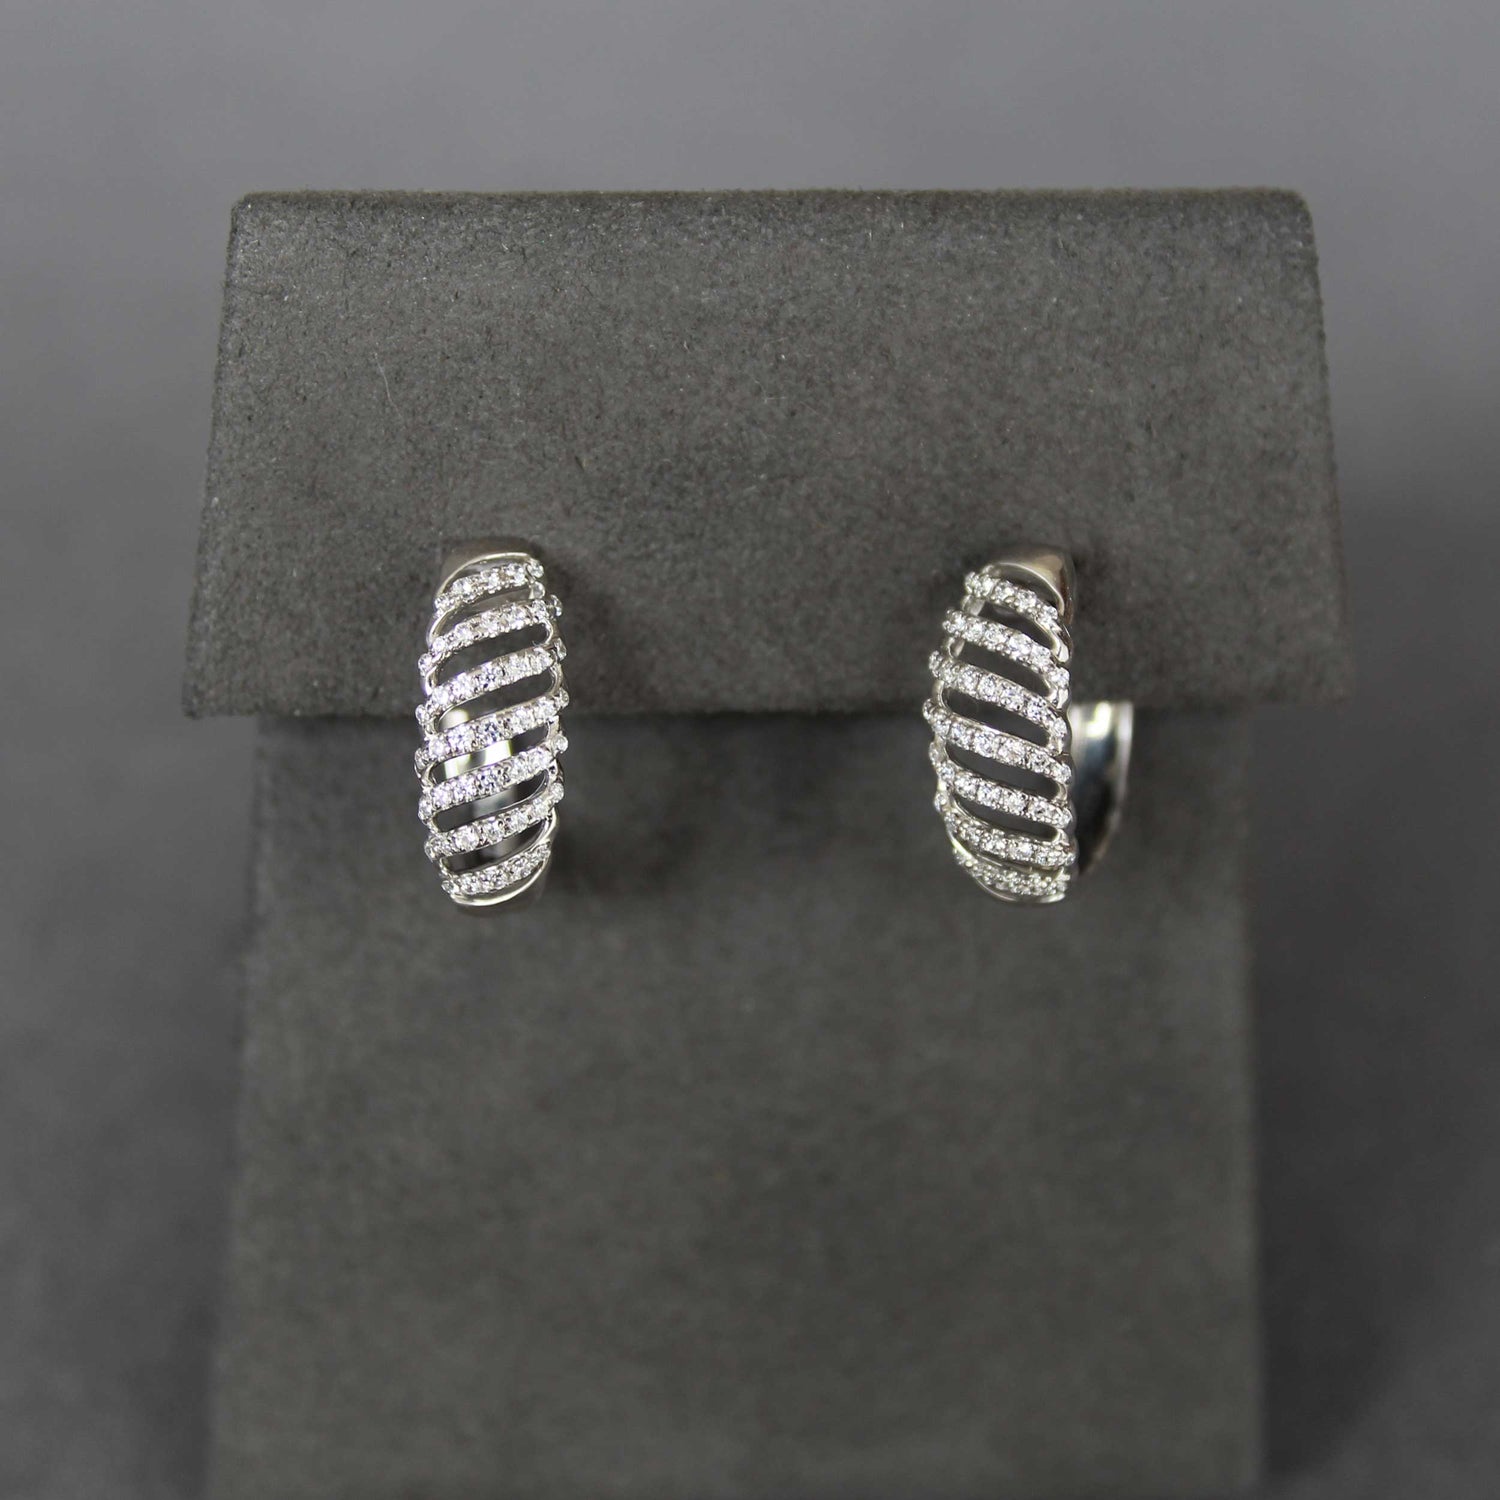 1/3 Cttw Diamond Lace Twist Dome Hoop Earrings set in 925 Sterling Silver